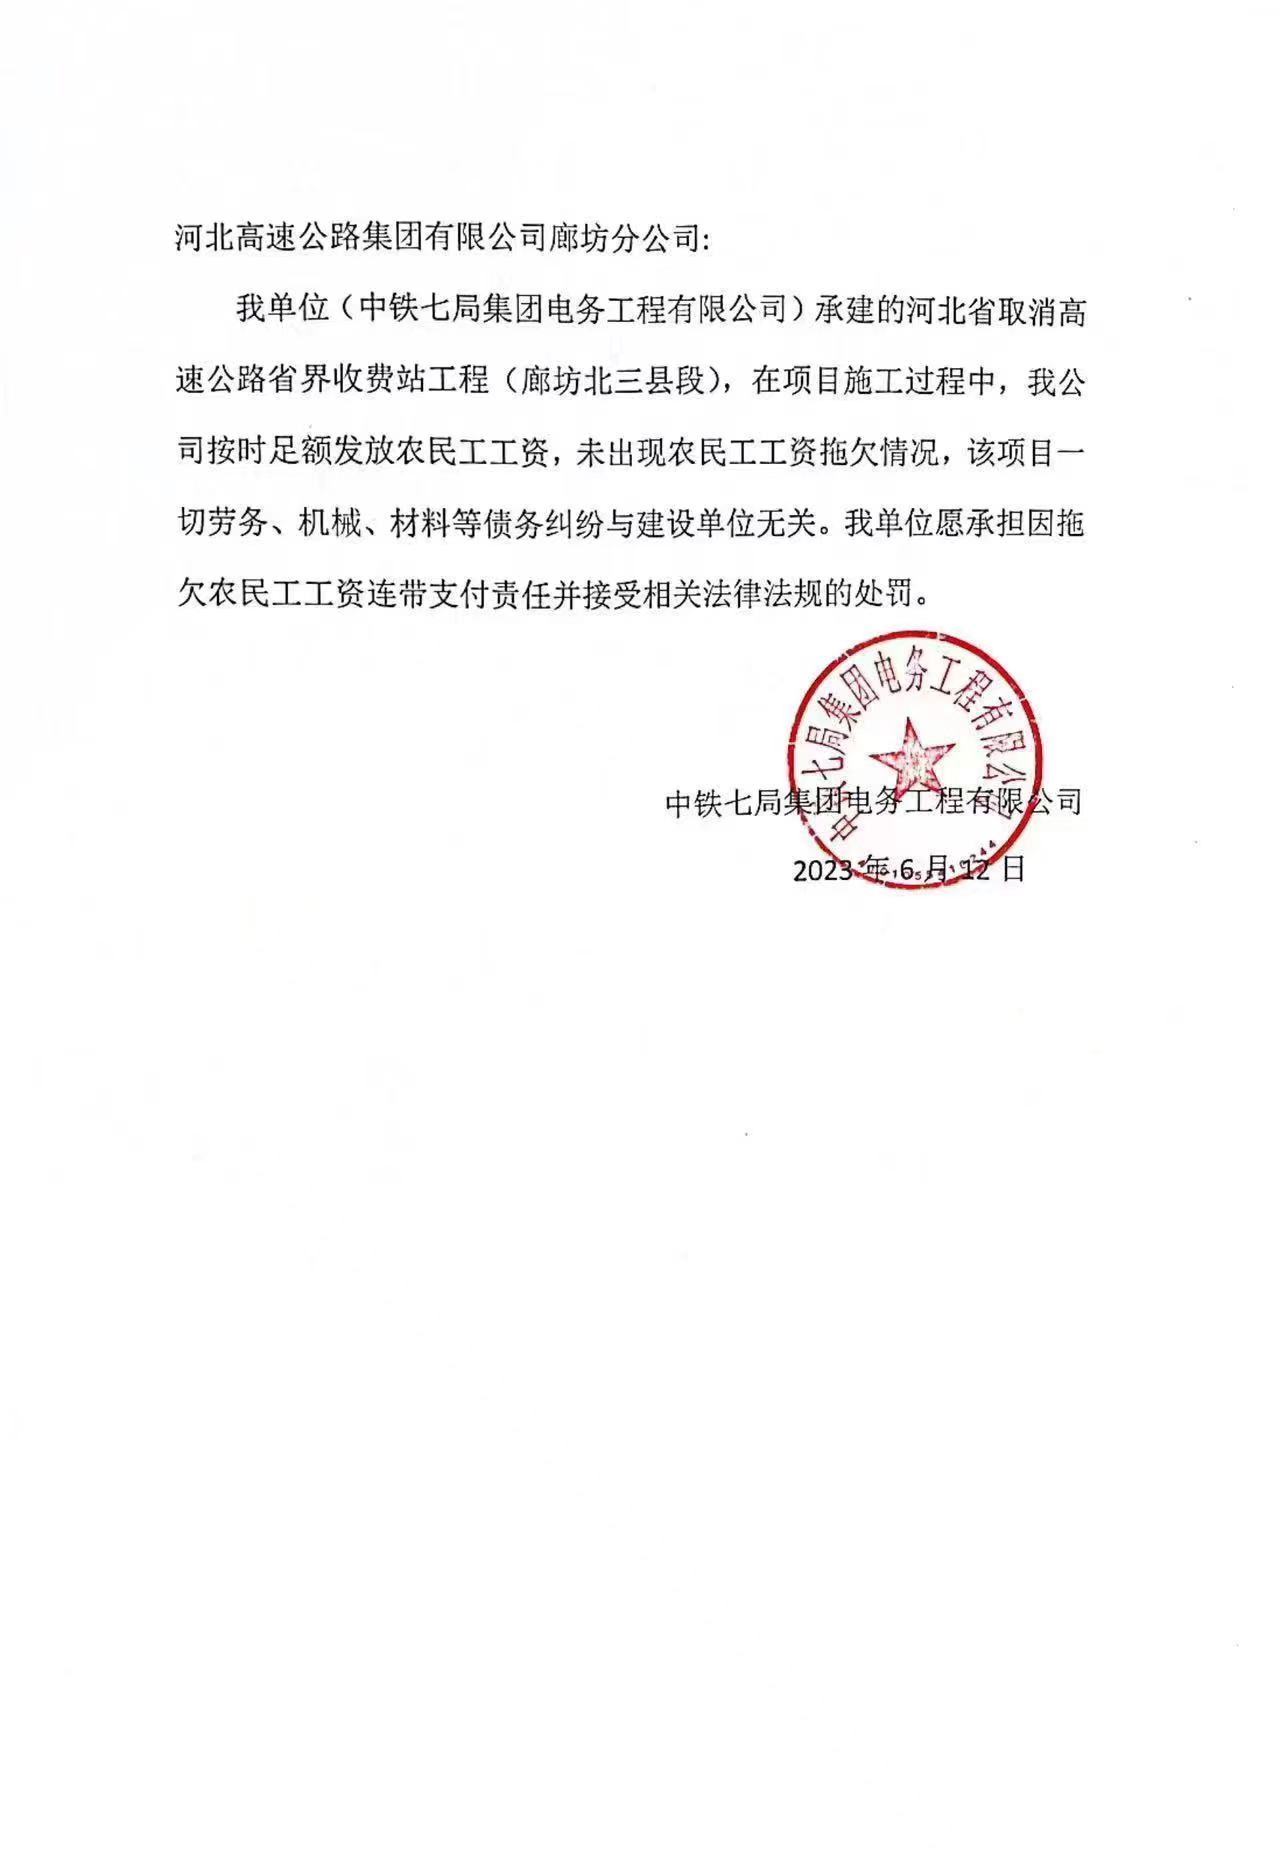 中鐵七局集團電務工程有限公司農民工工資發放情況公示